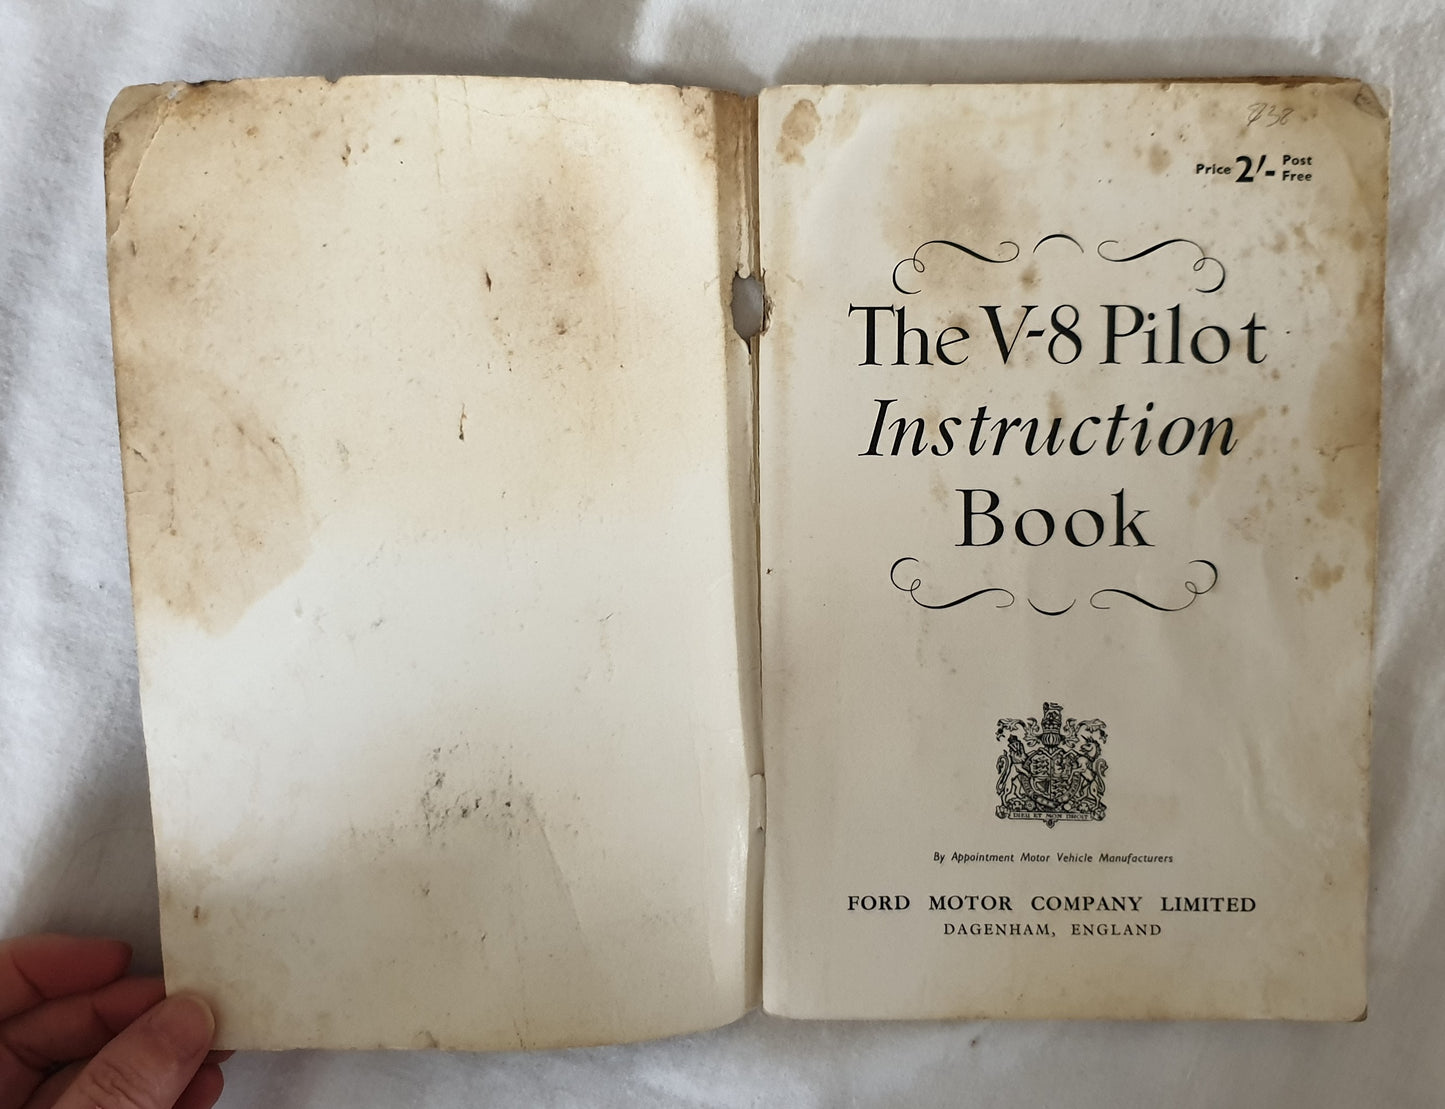 The V-8 Pilot Instruction Book